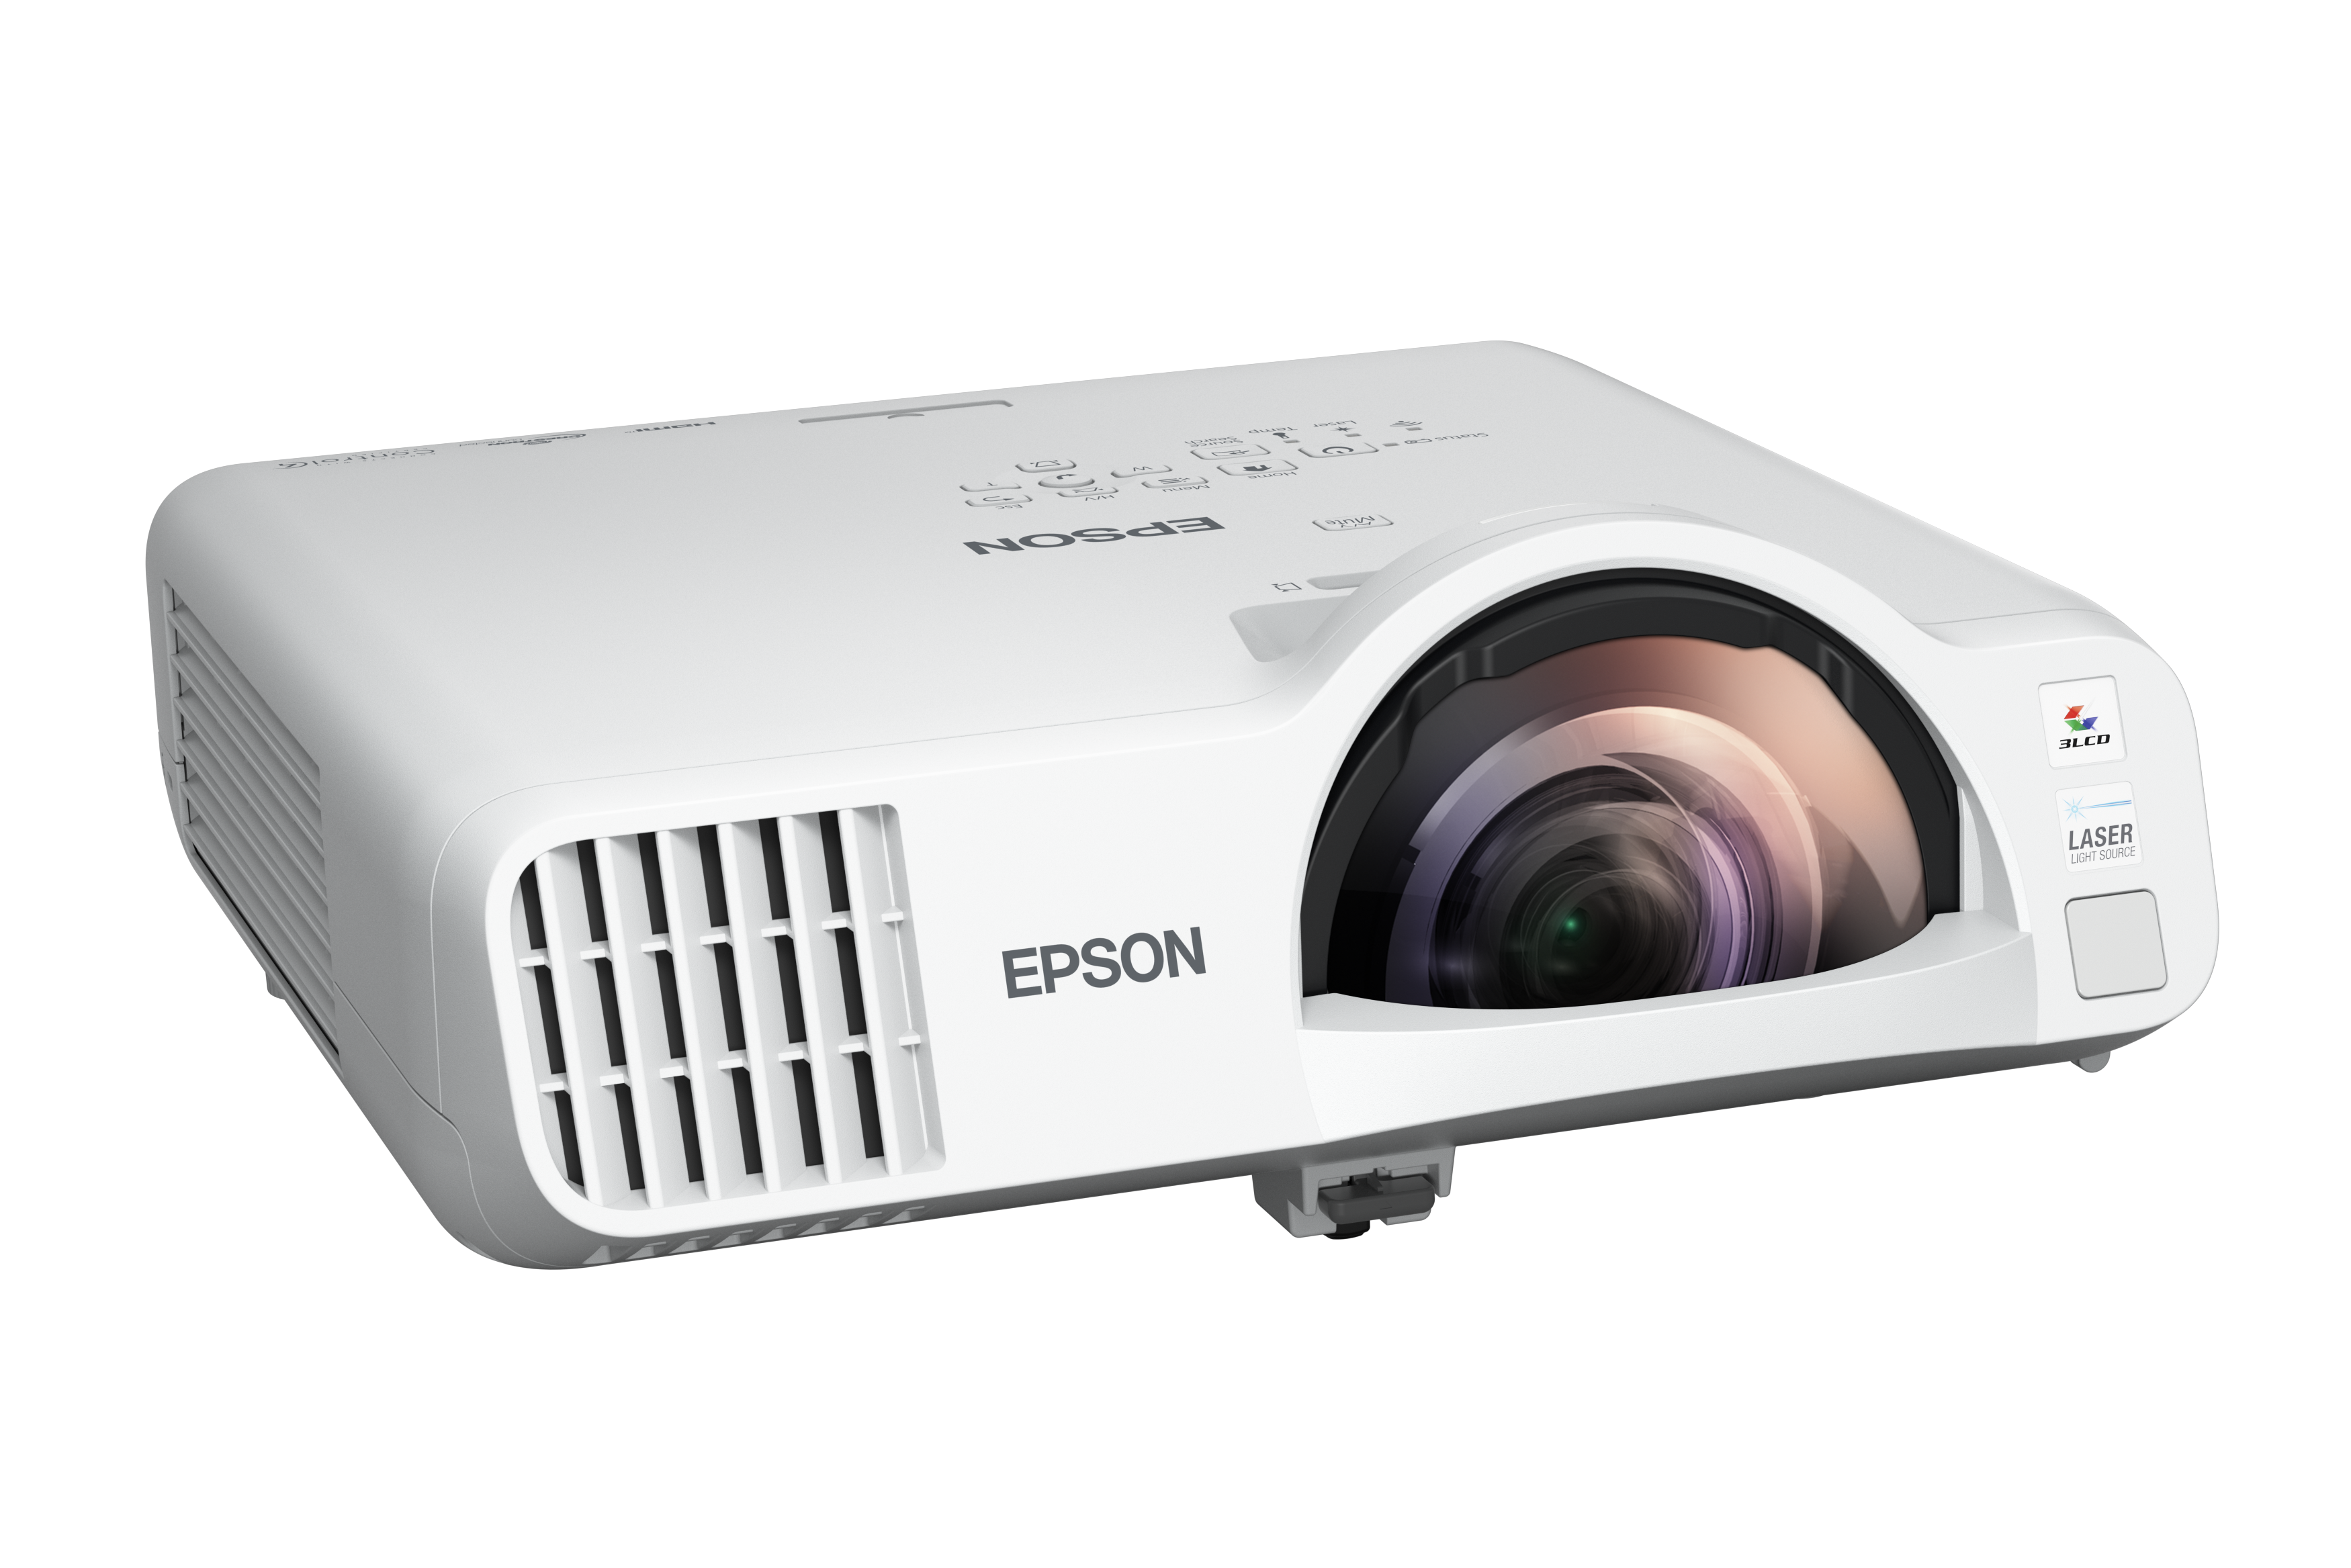 Projektor Epson krótkoogniskowy laserowy EB-L200SX 3LCD/XGA/3600AL/4:3/2.5mln:1/laser